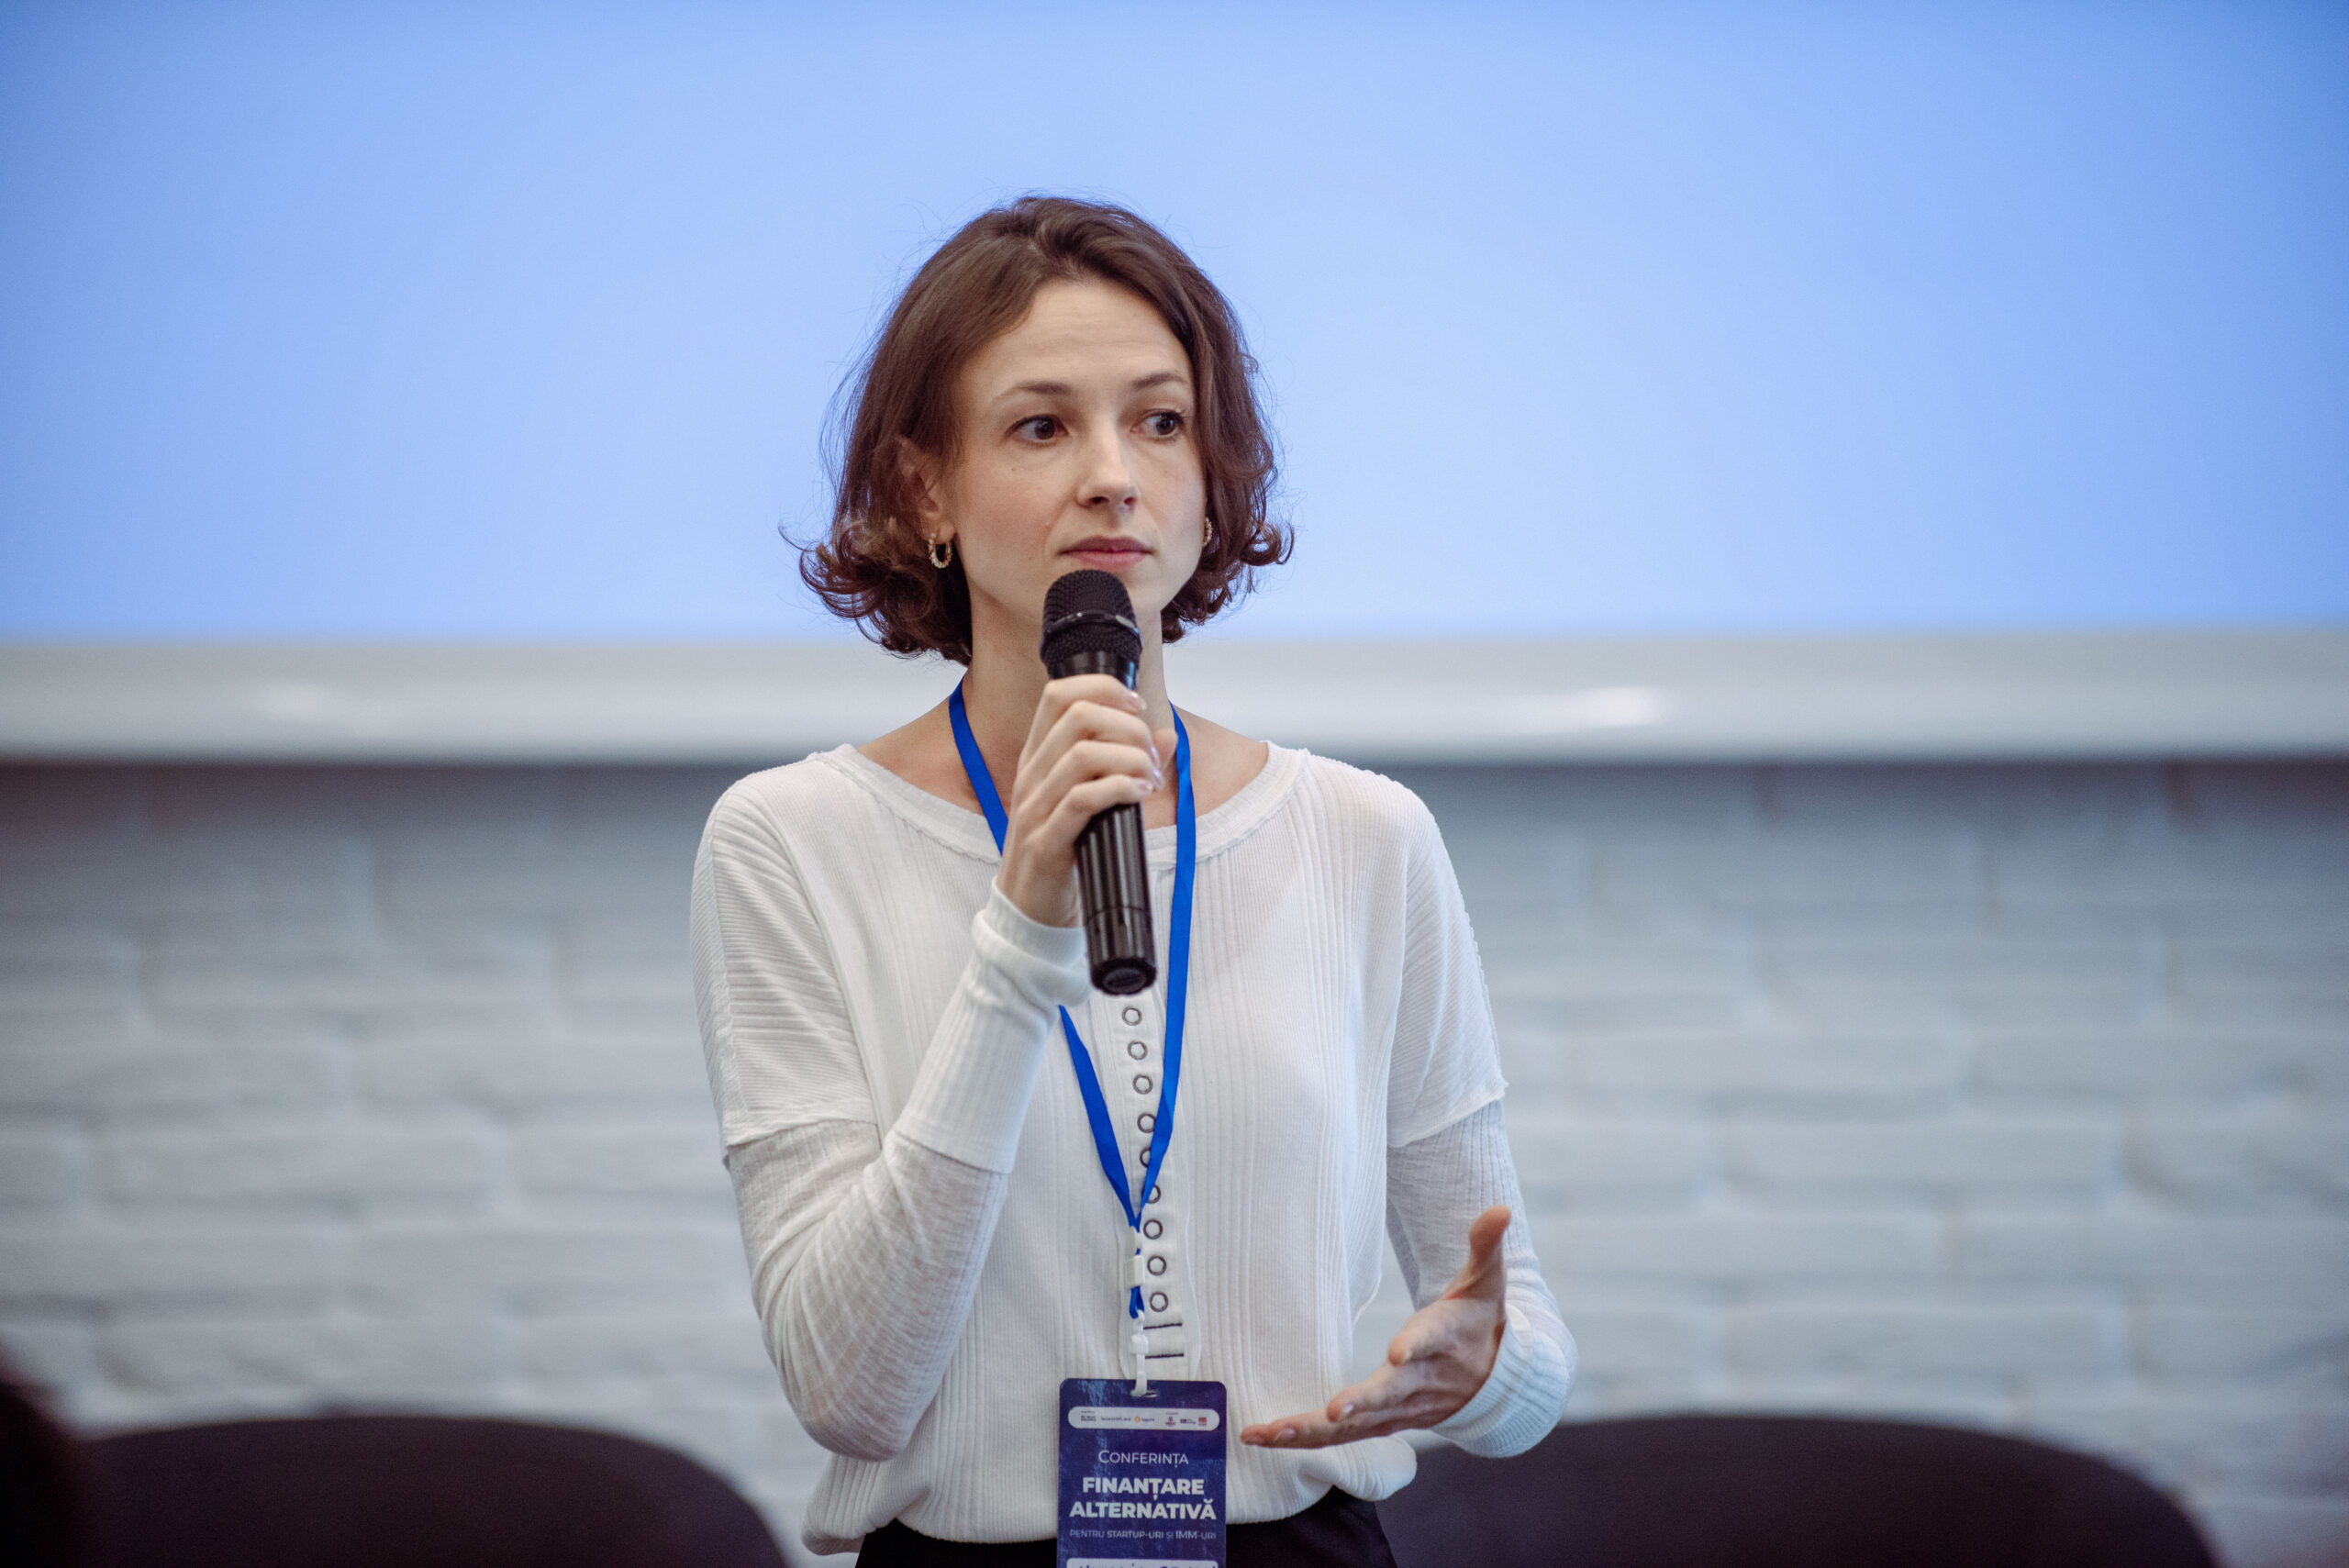 Acces extins la resurse financiare pentru antreprenorii din Moldova! Cunoaște principalele instrumente de finanțare alternativă disponibile pe piață